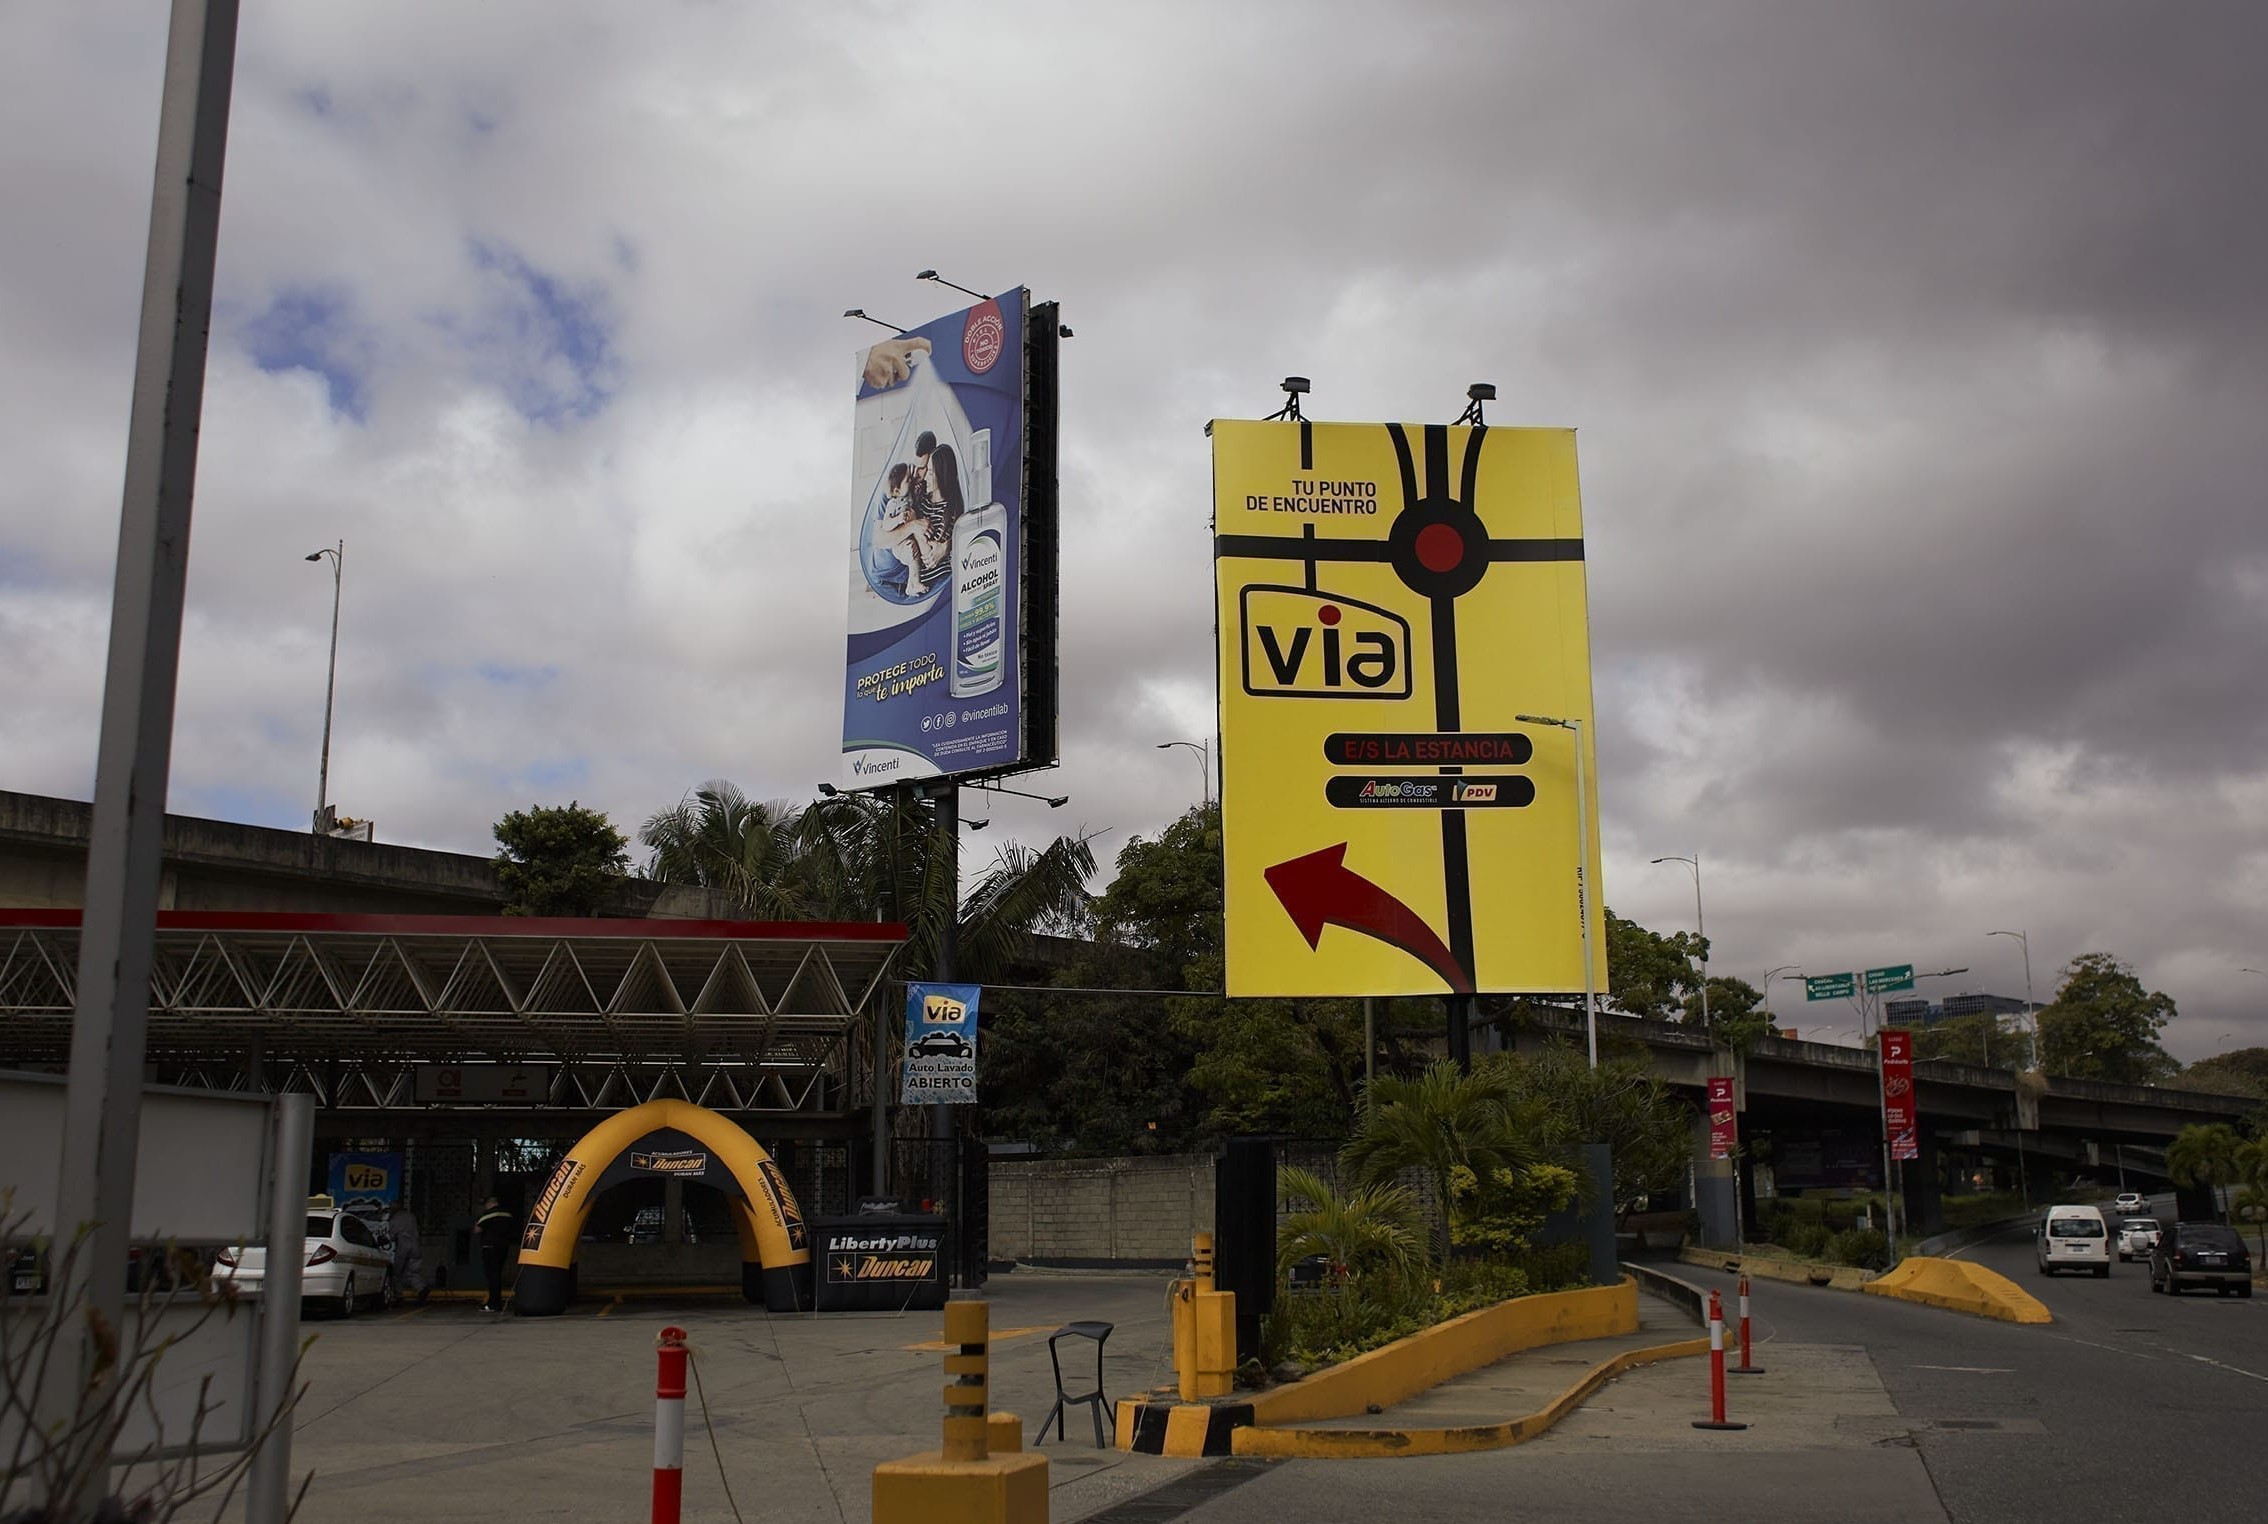 El lujo se instaló con la privatización de estaciones de servicio en una Caracas empobrecida